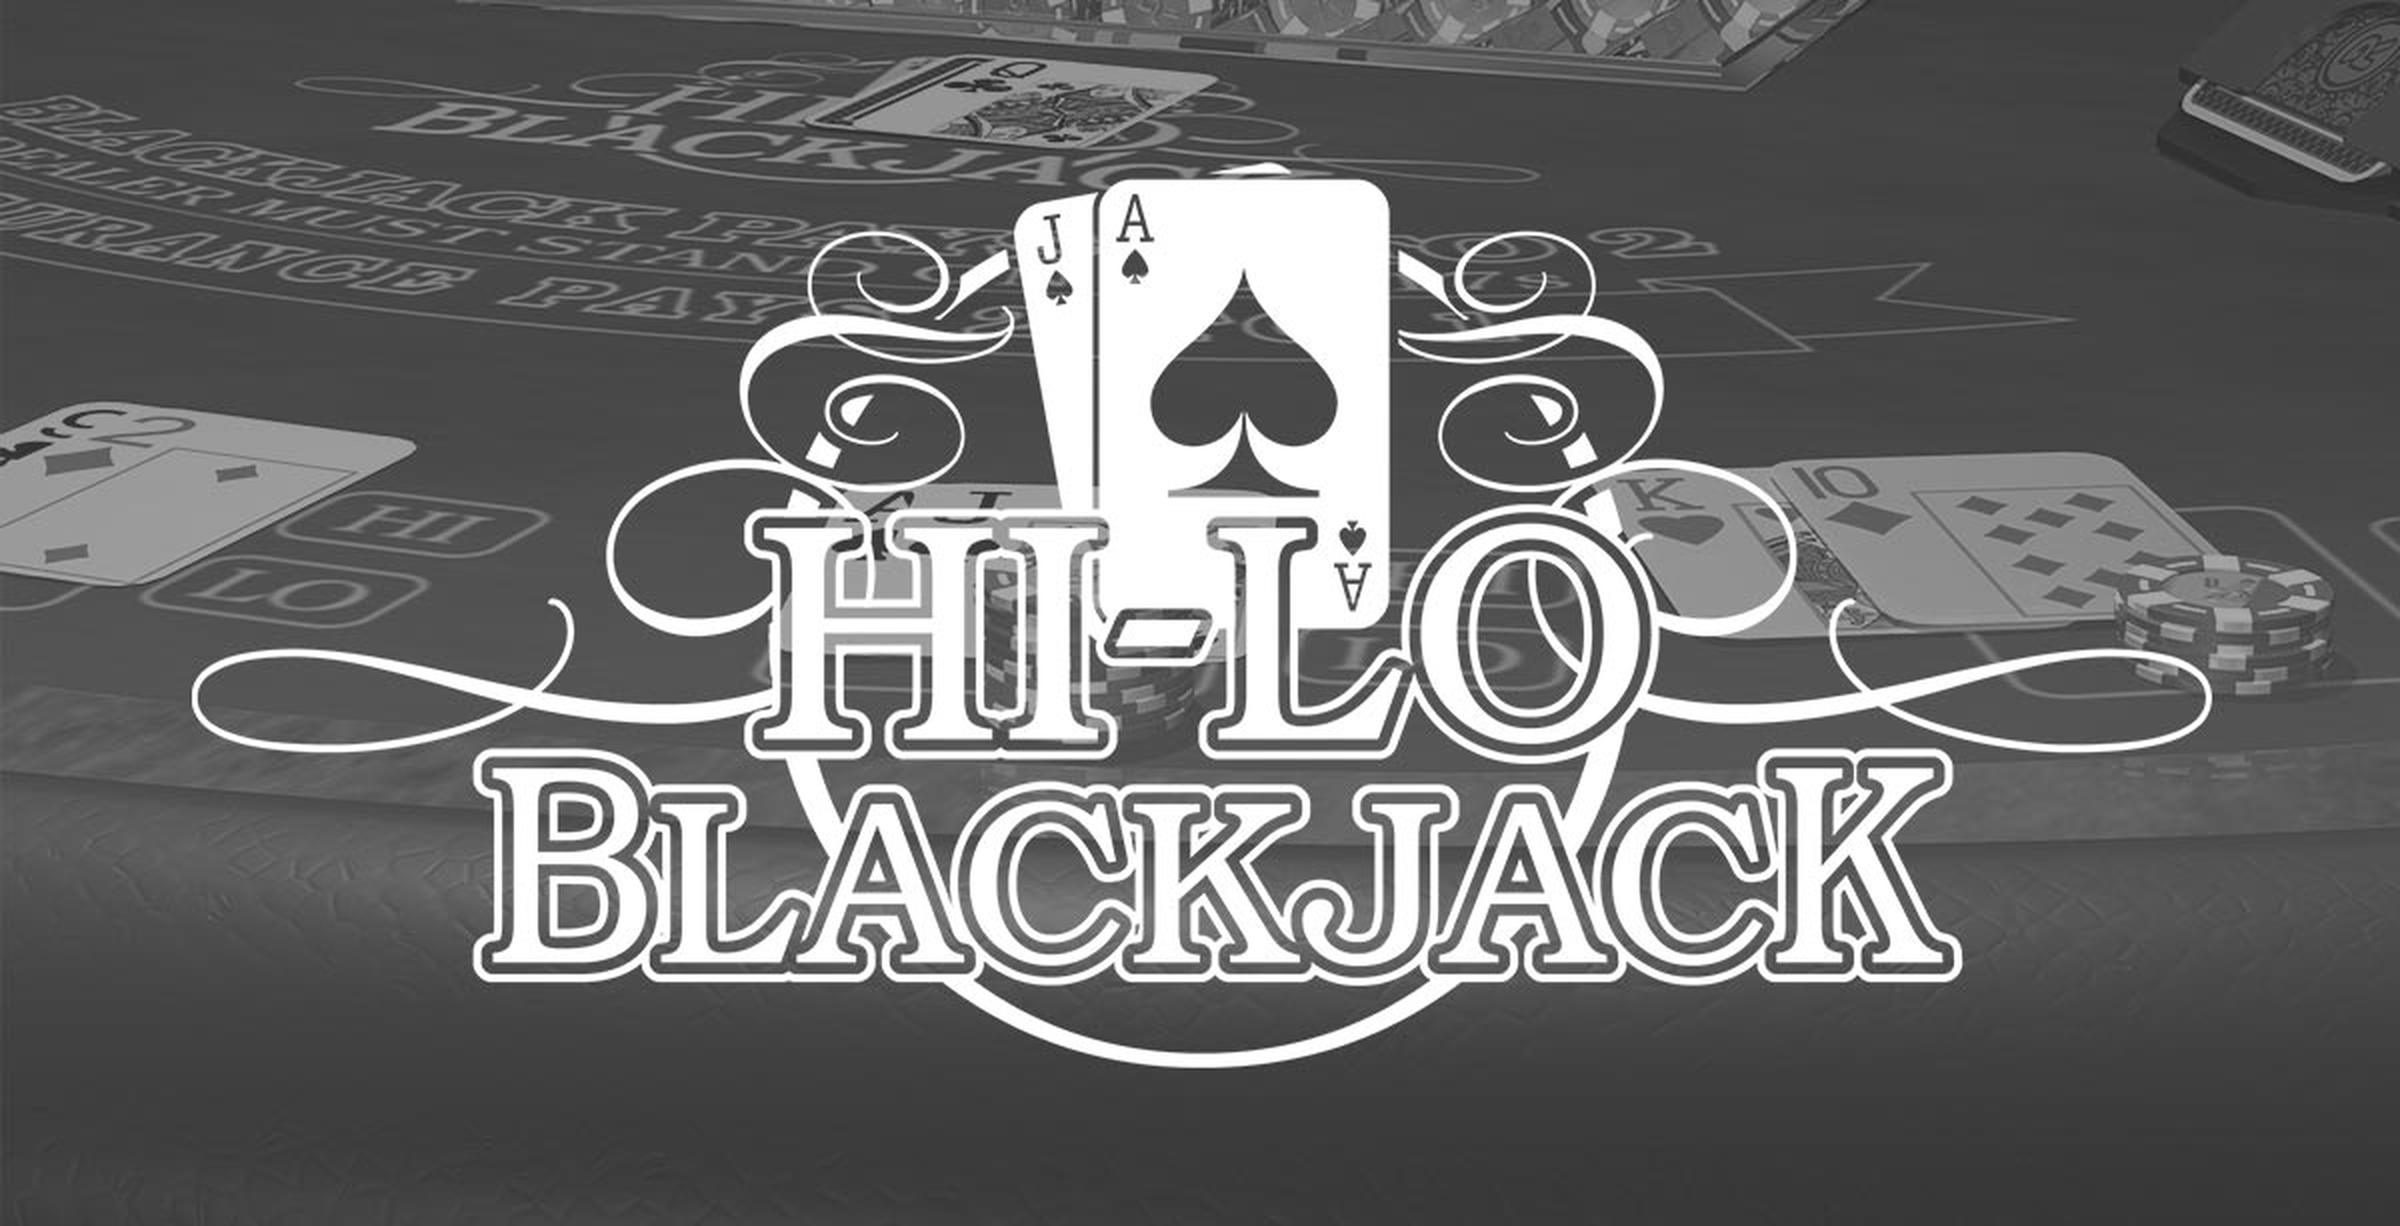 Hi Lo Blackjack demo